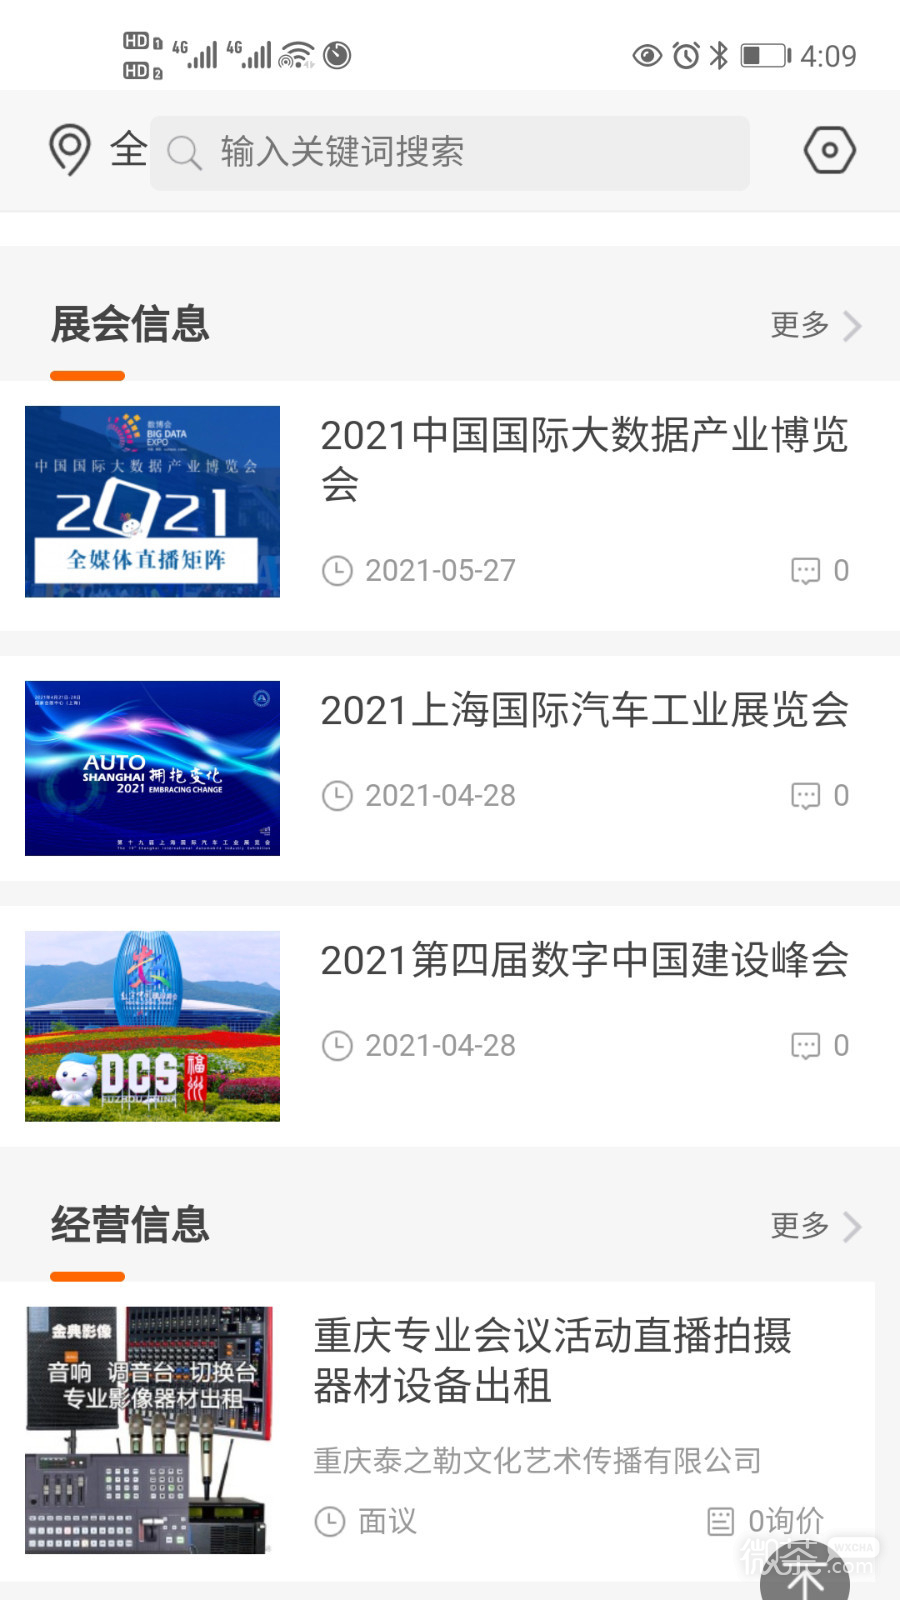 中国通讯市场网